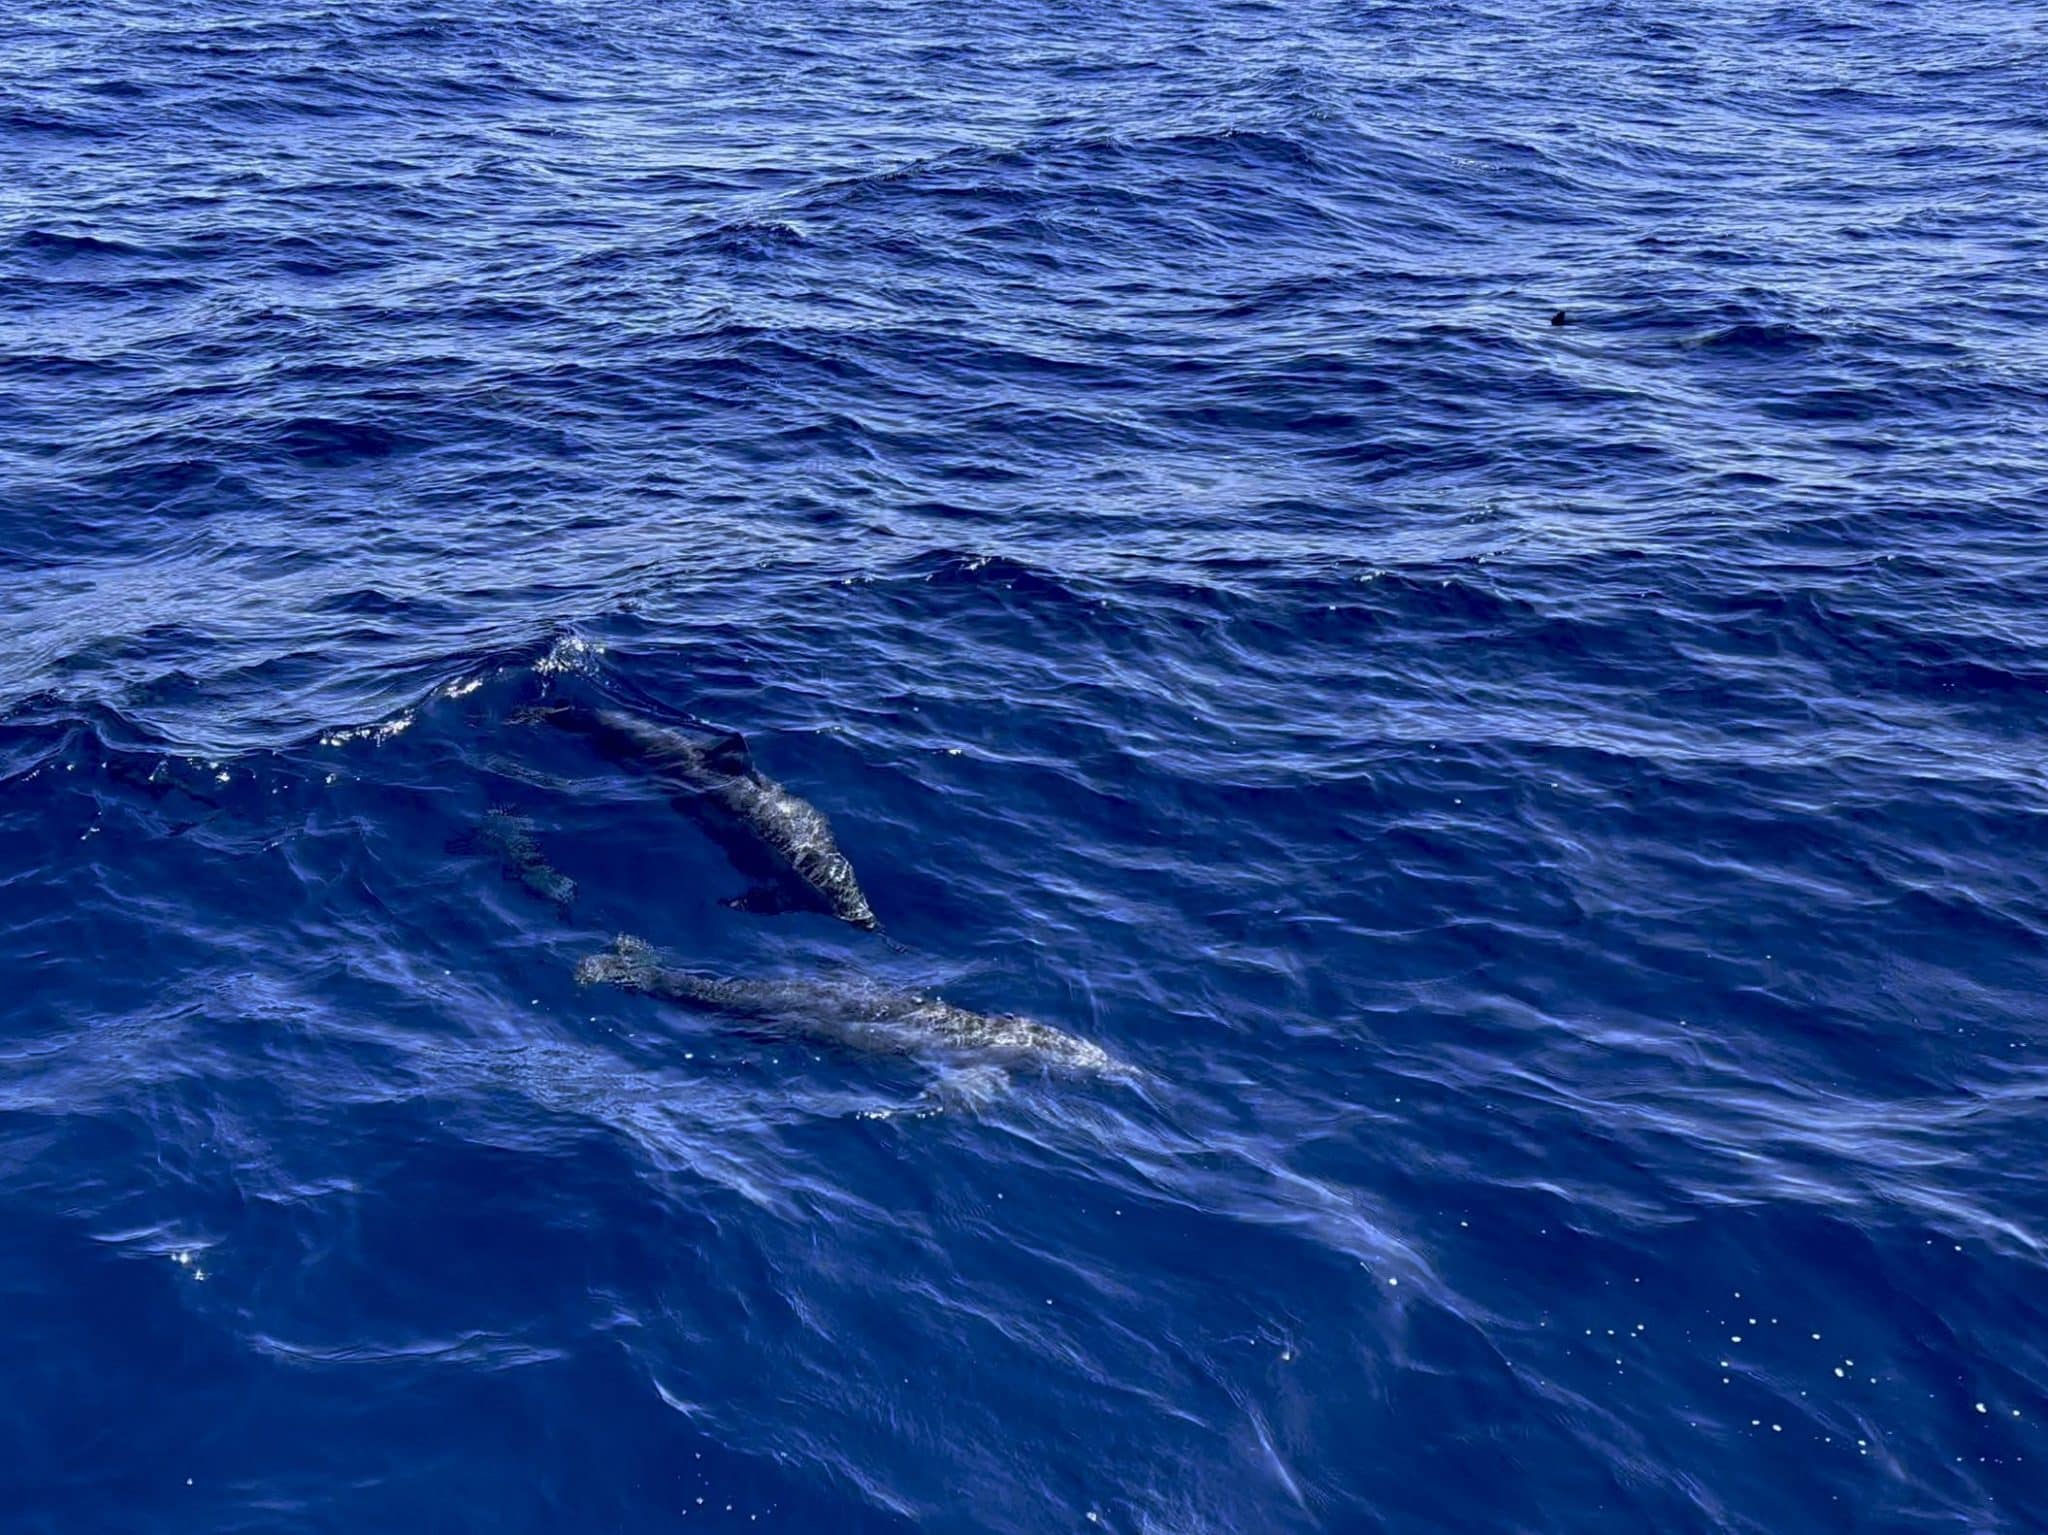 Delfine vor Safaga Island – in der Region kannst du im Meer viele Lebewesen entdecken. Foto: Sascha Tegtmeyer